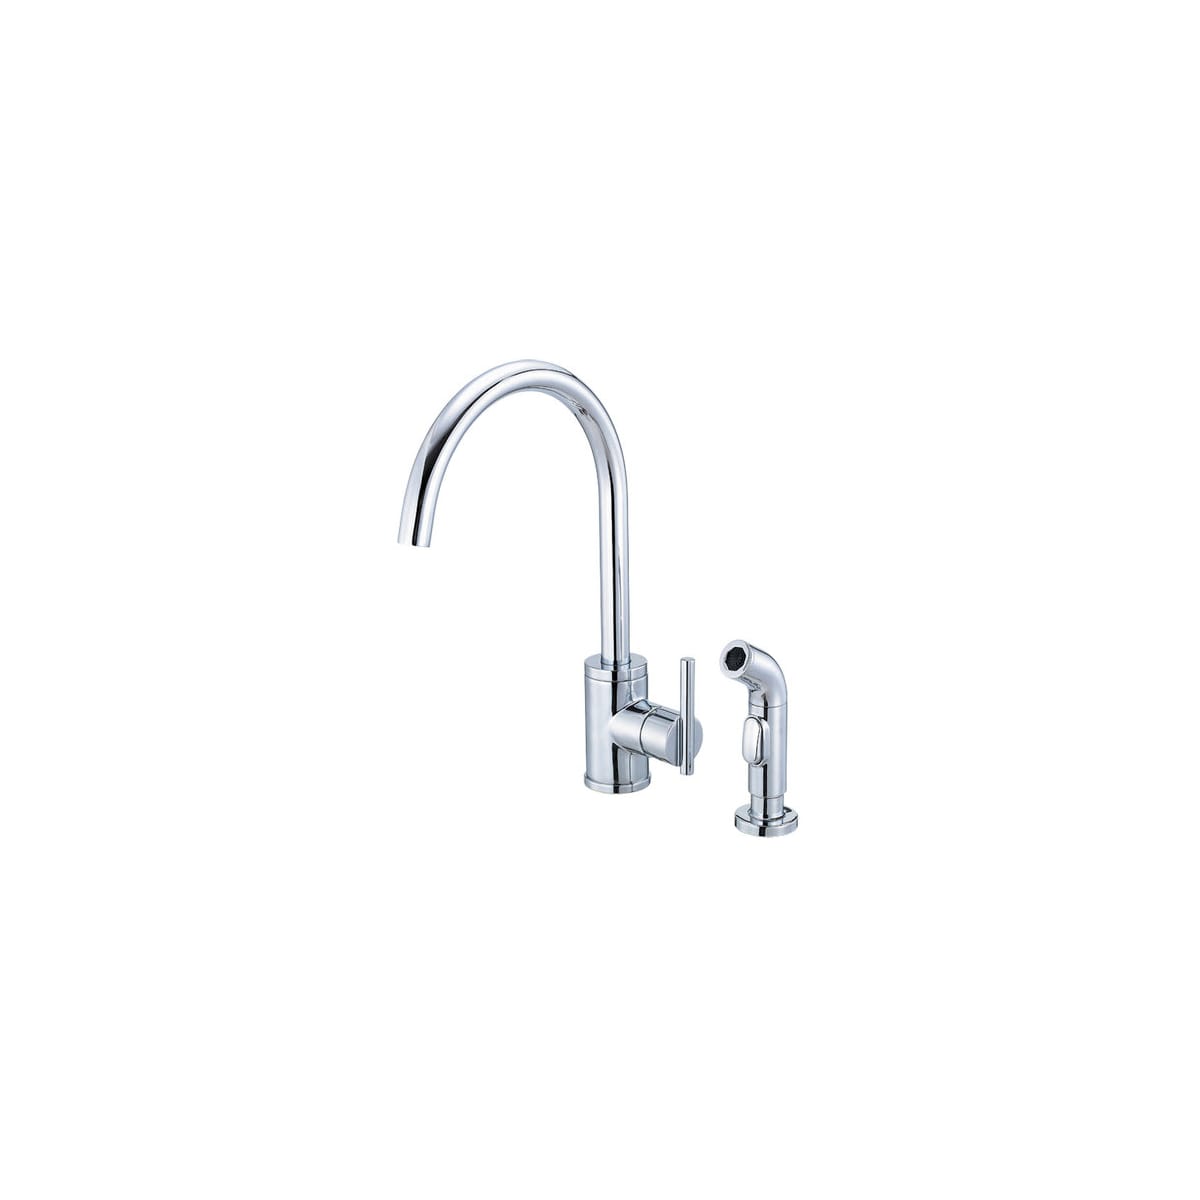 Danze D401558 Chrome Kitchen Faucet Includes Metal Side Spray